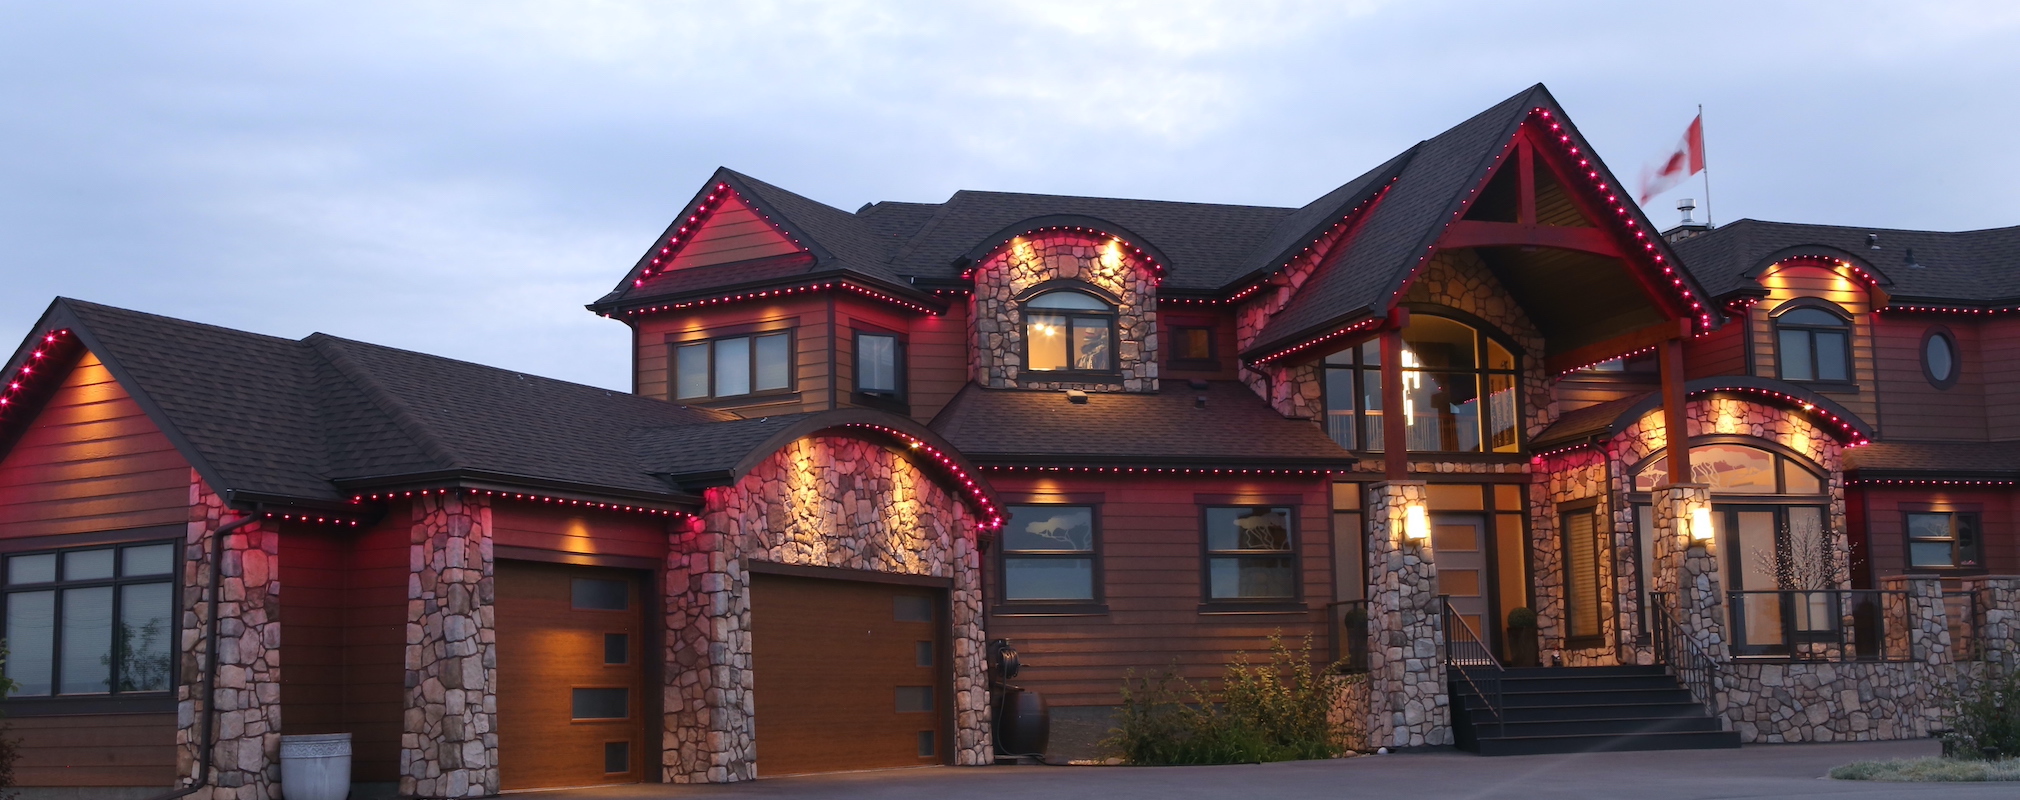 GlowStone Lighting Dealership Residency